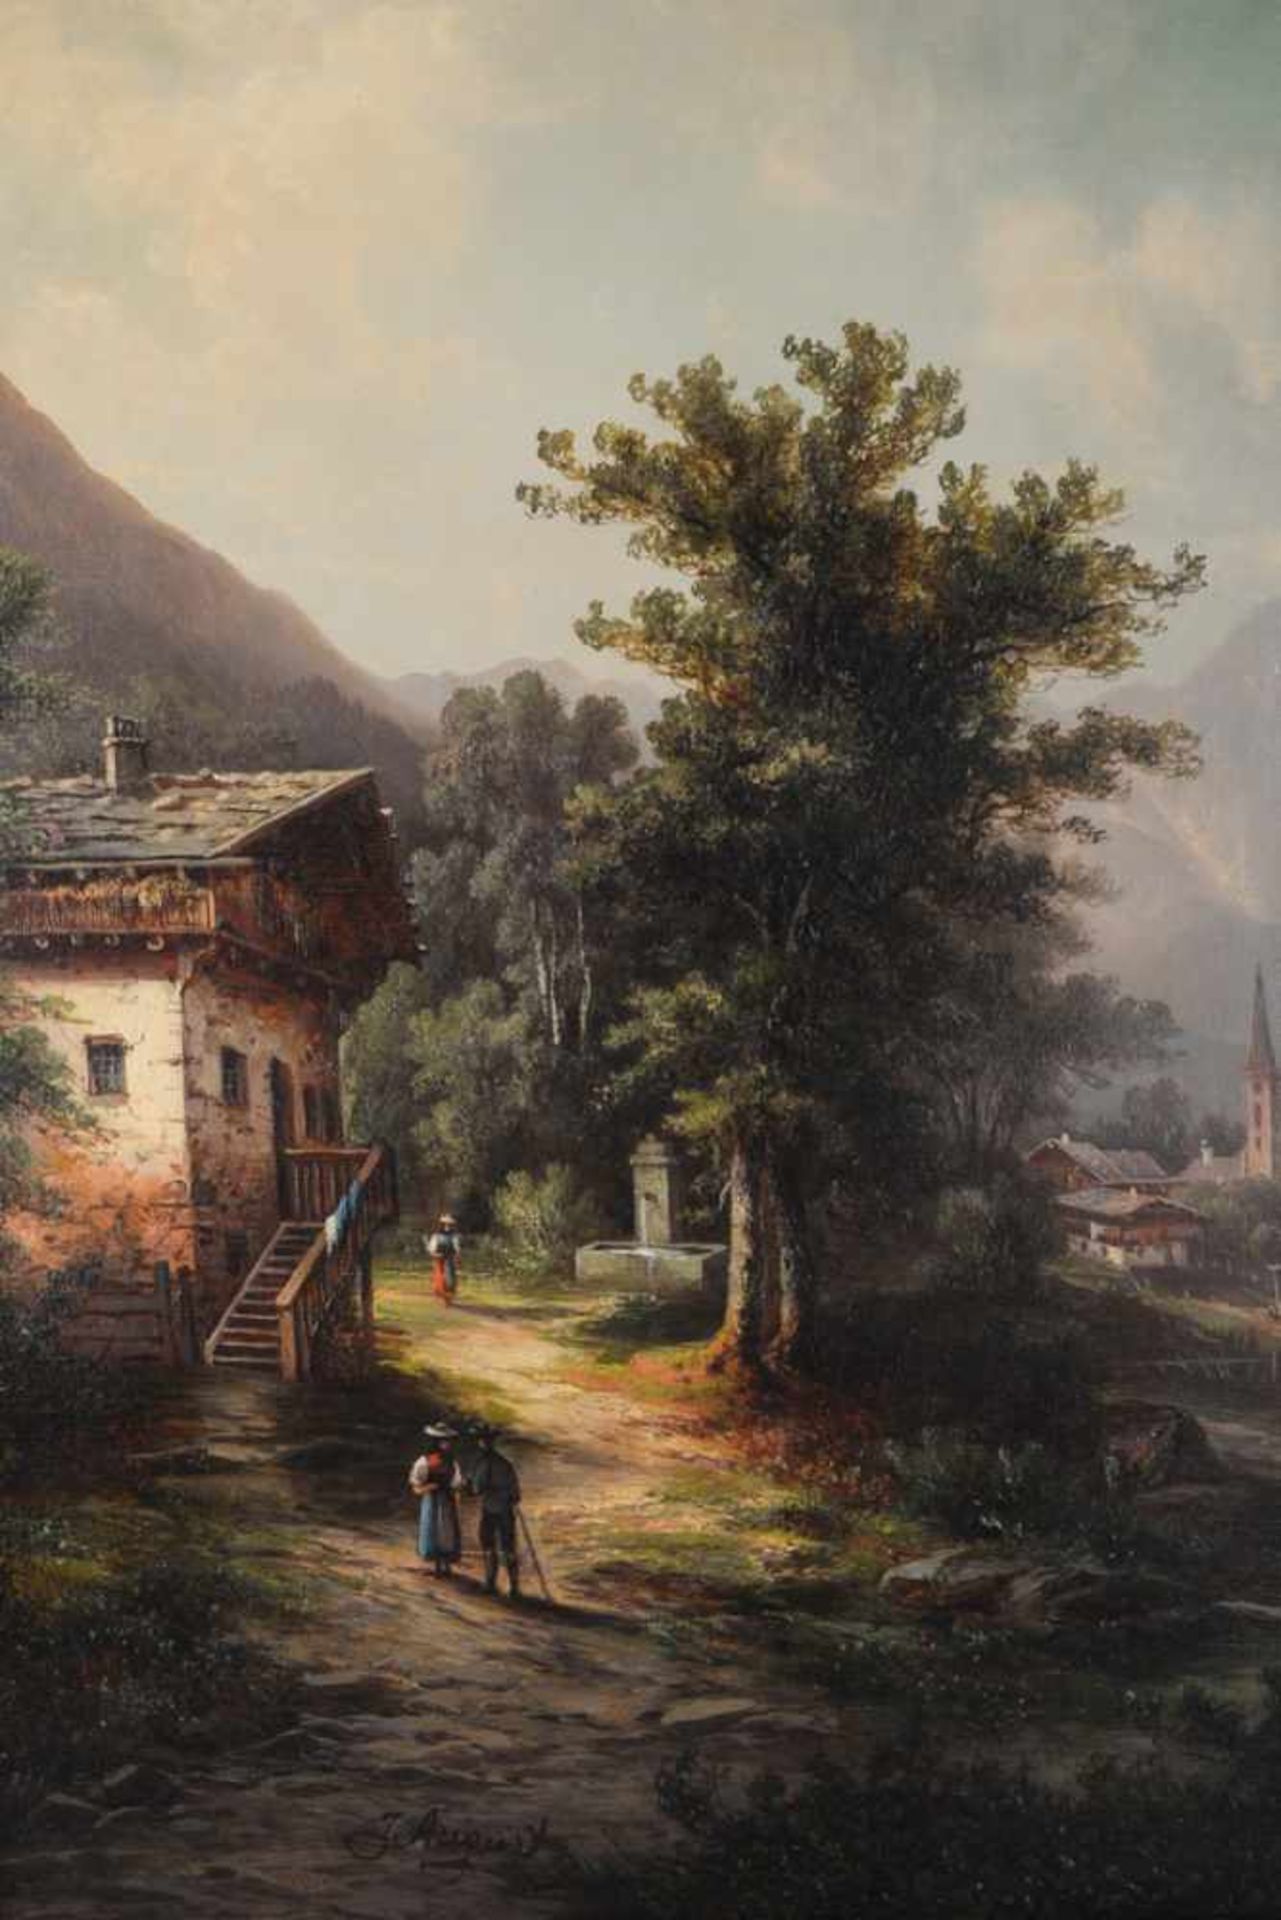 Romantische Landschaft, signiert J. August.Öl auf Leinwand, Datierung um 1870, unten links signiert, - Bild 2 aus 7